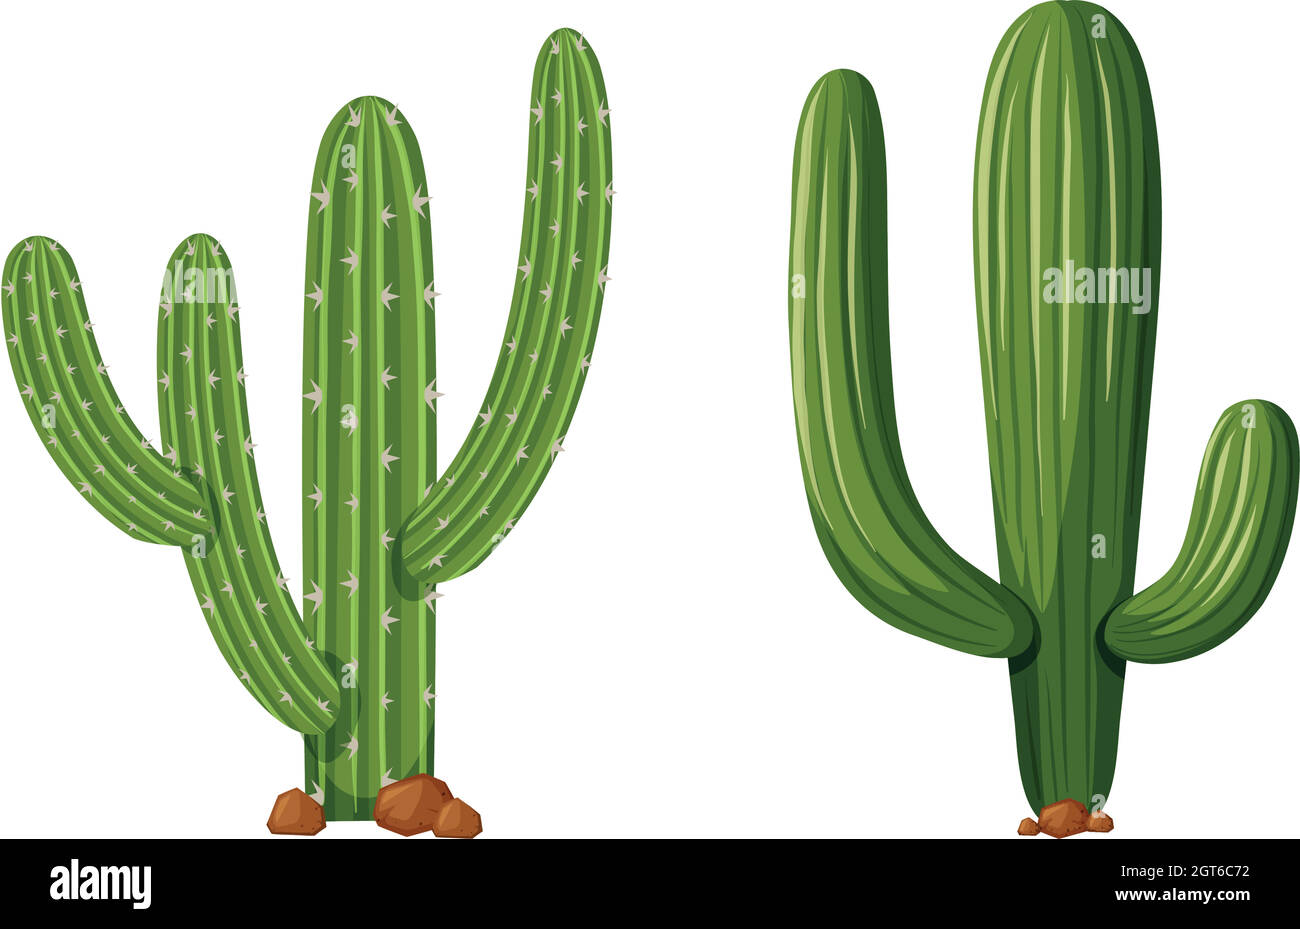 Zwei Arten von Kaktuspflanzen Stock Vektor